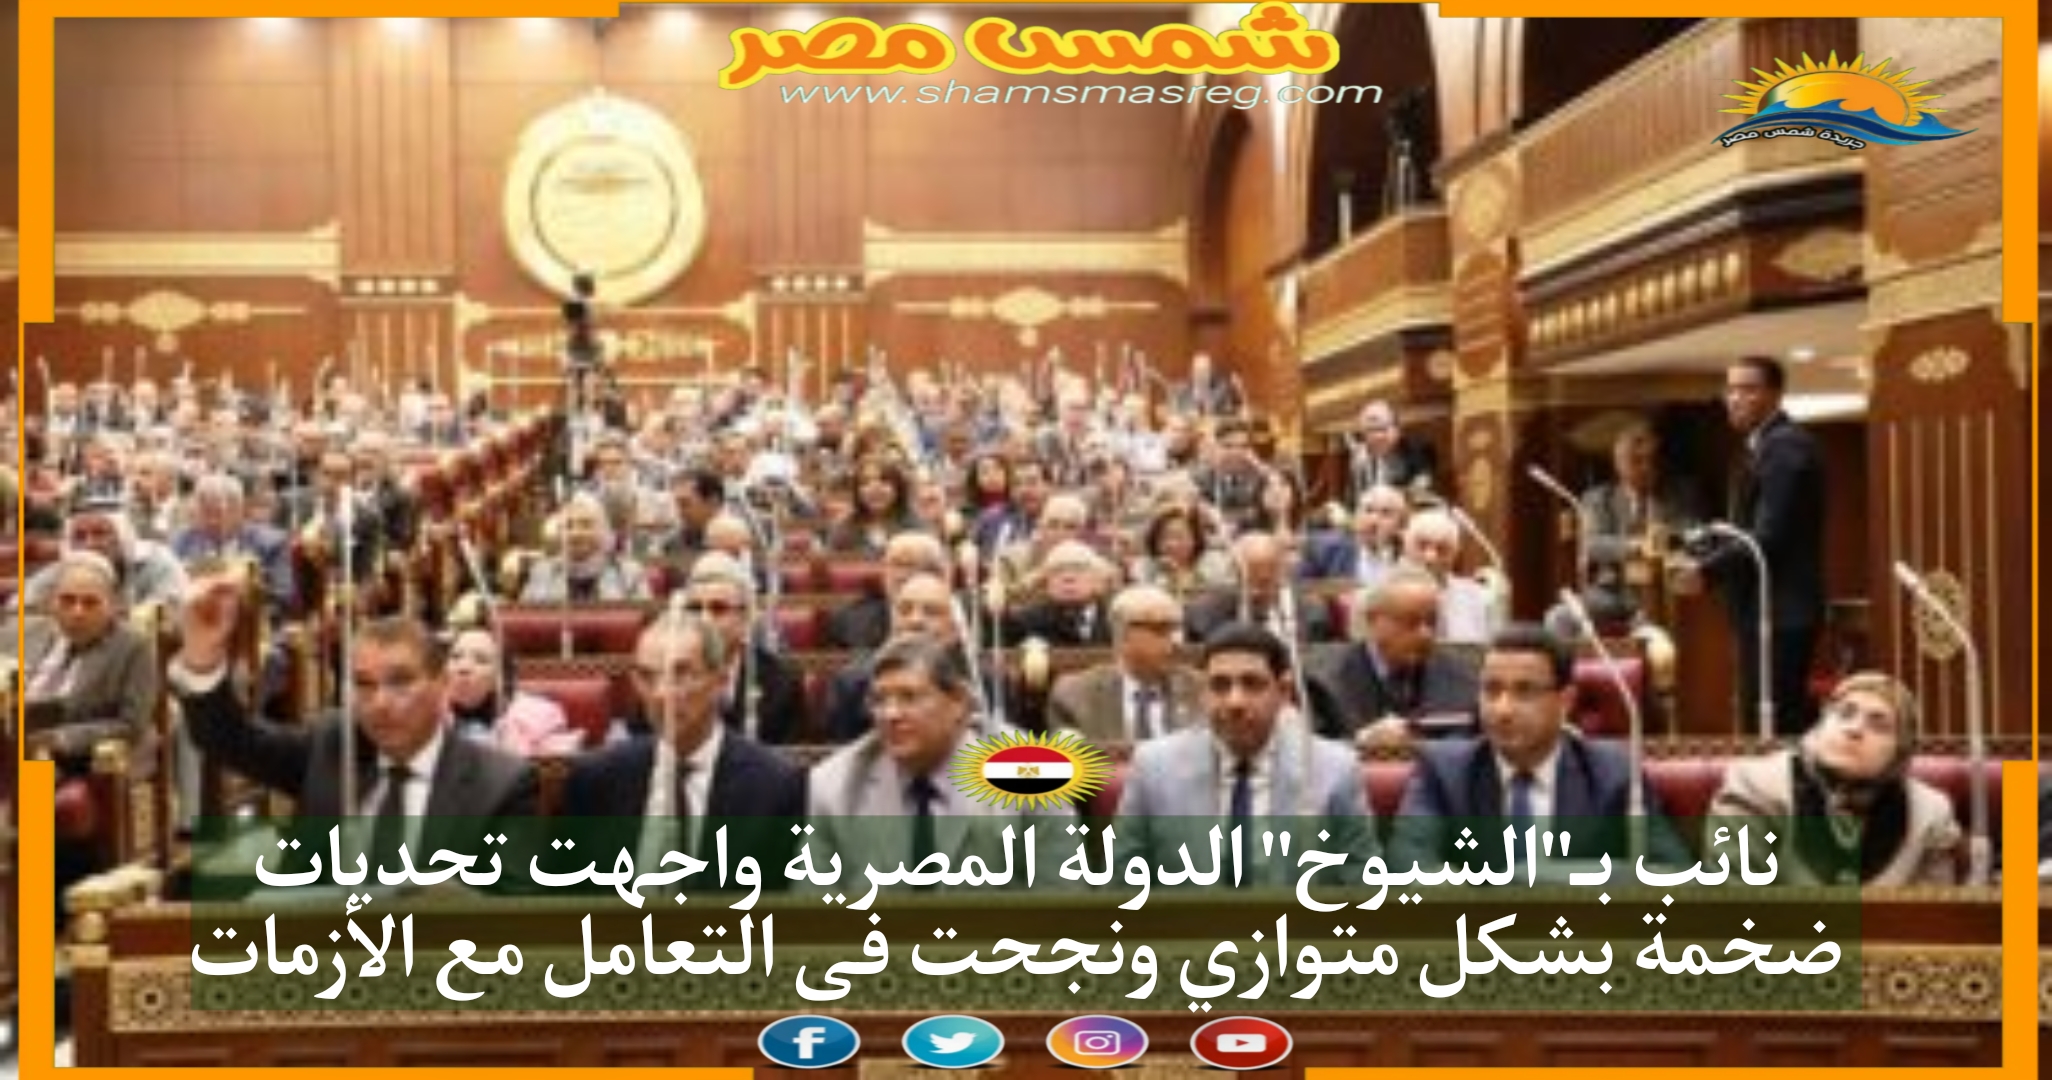 نائب بـ"الشيوخ" الدولة المصرية واجهت تحديات ضخمة بشكل متوازي ونجحت فى التعامل مع الأزمات.